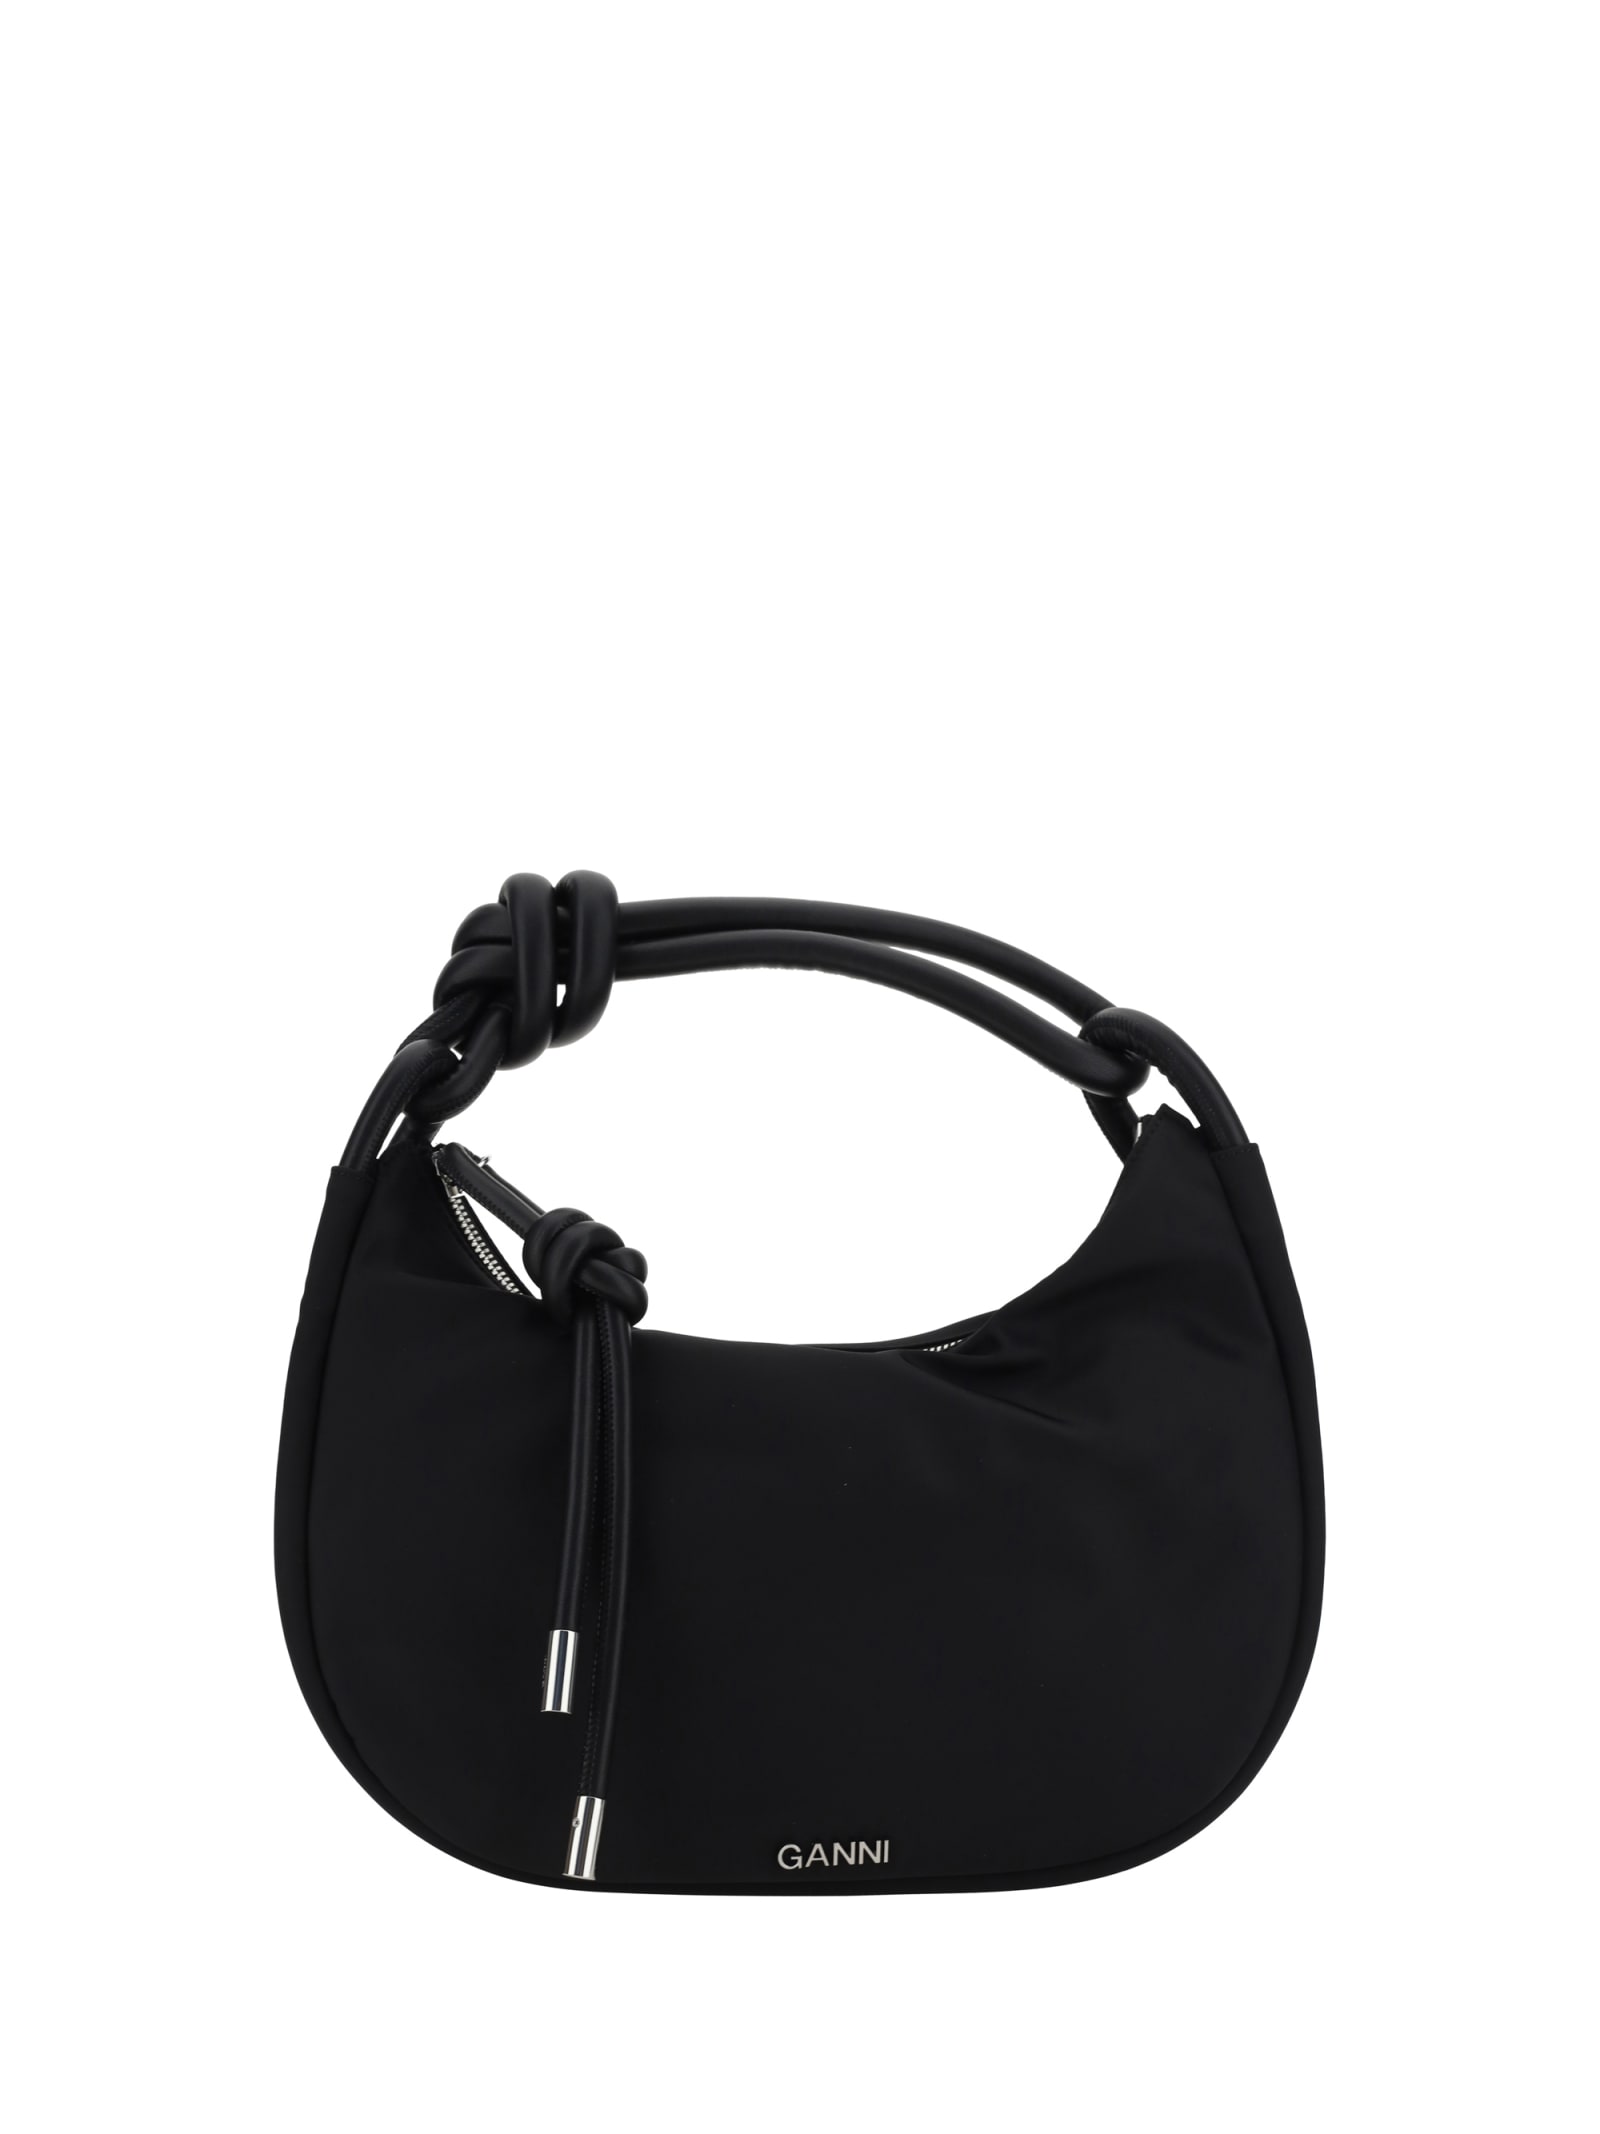 Ganni Baguette Handbag In Black